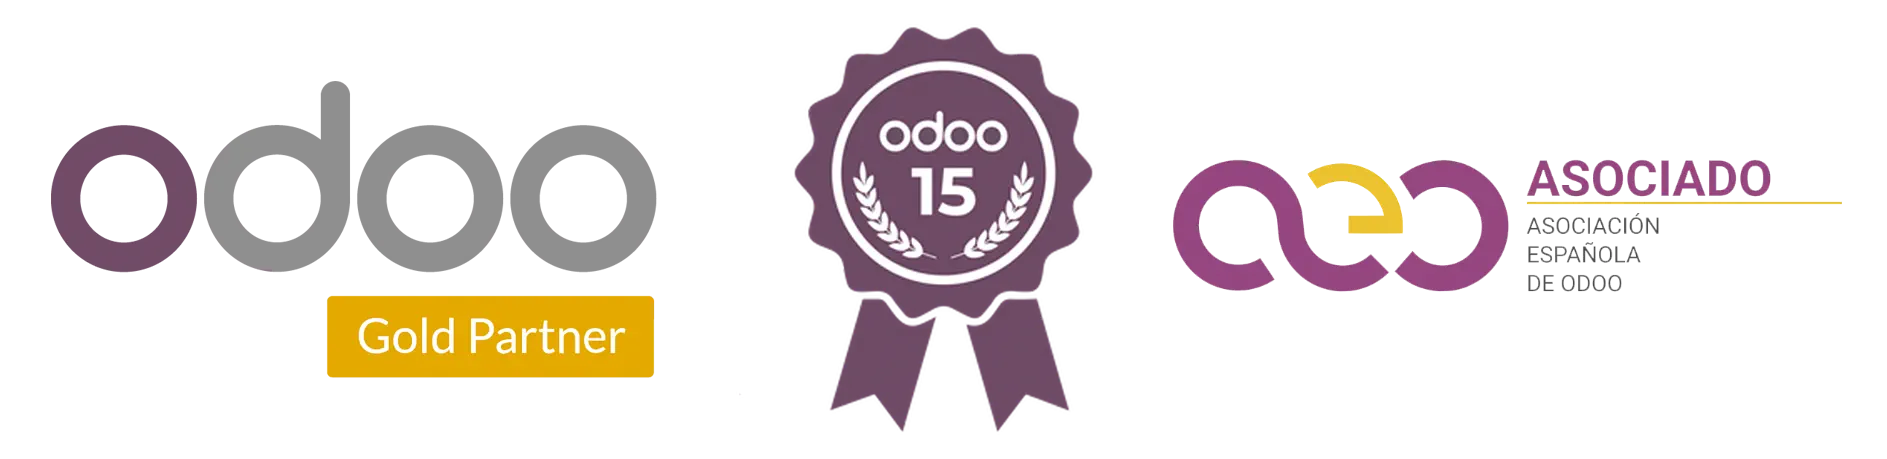 Indaws Odoo Gold Partner, Odoo 15, aeodoo